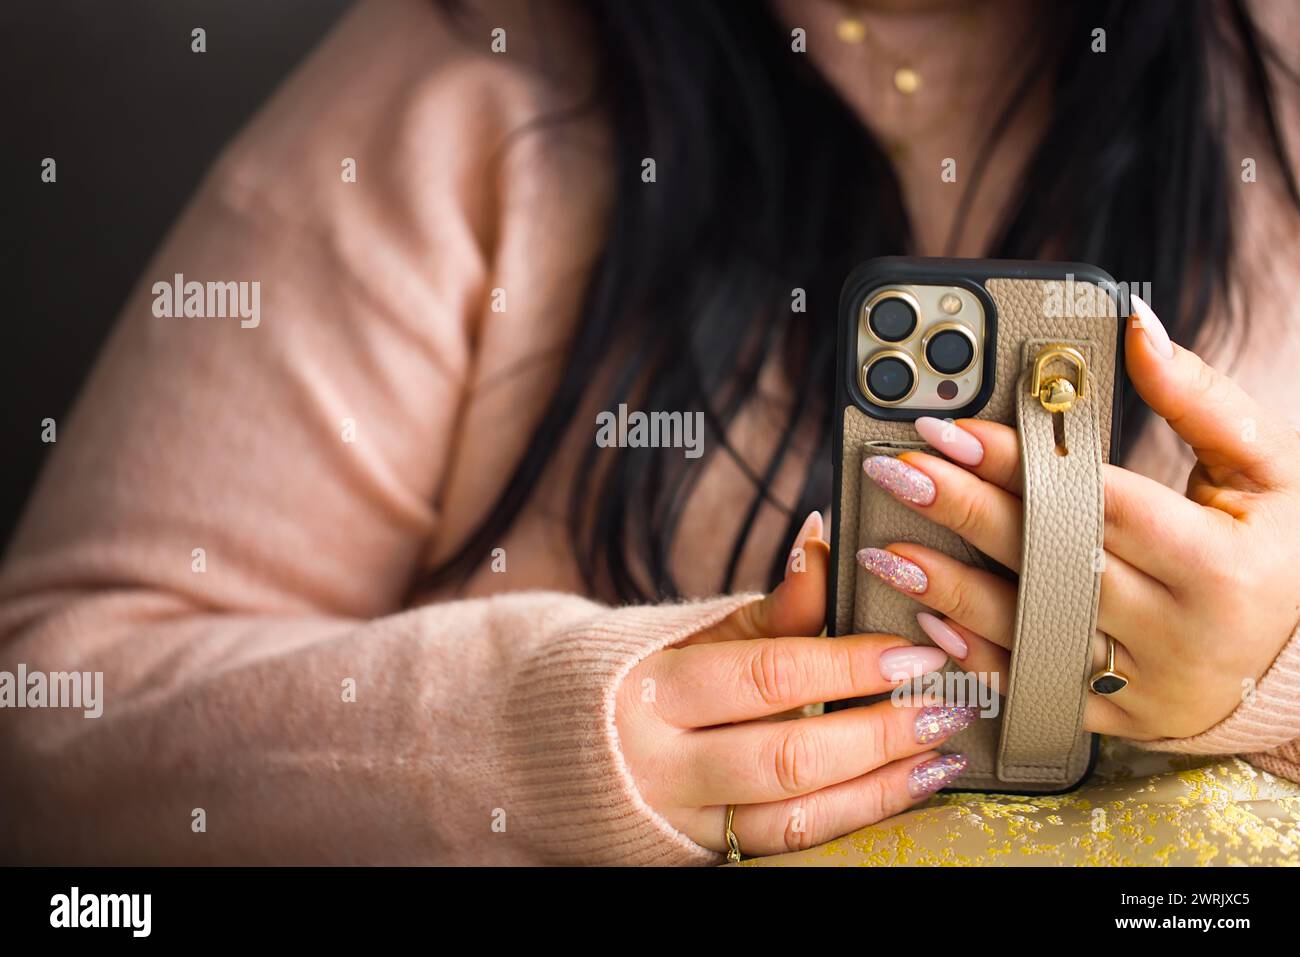 Gros plan des mains d'une femme tenant un smartphone. La femme a de superbes ongles en gel rose, méticuleusement peints avec deux ongles ornés de stylets Banque D'Images